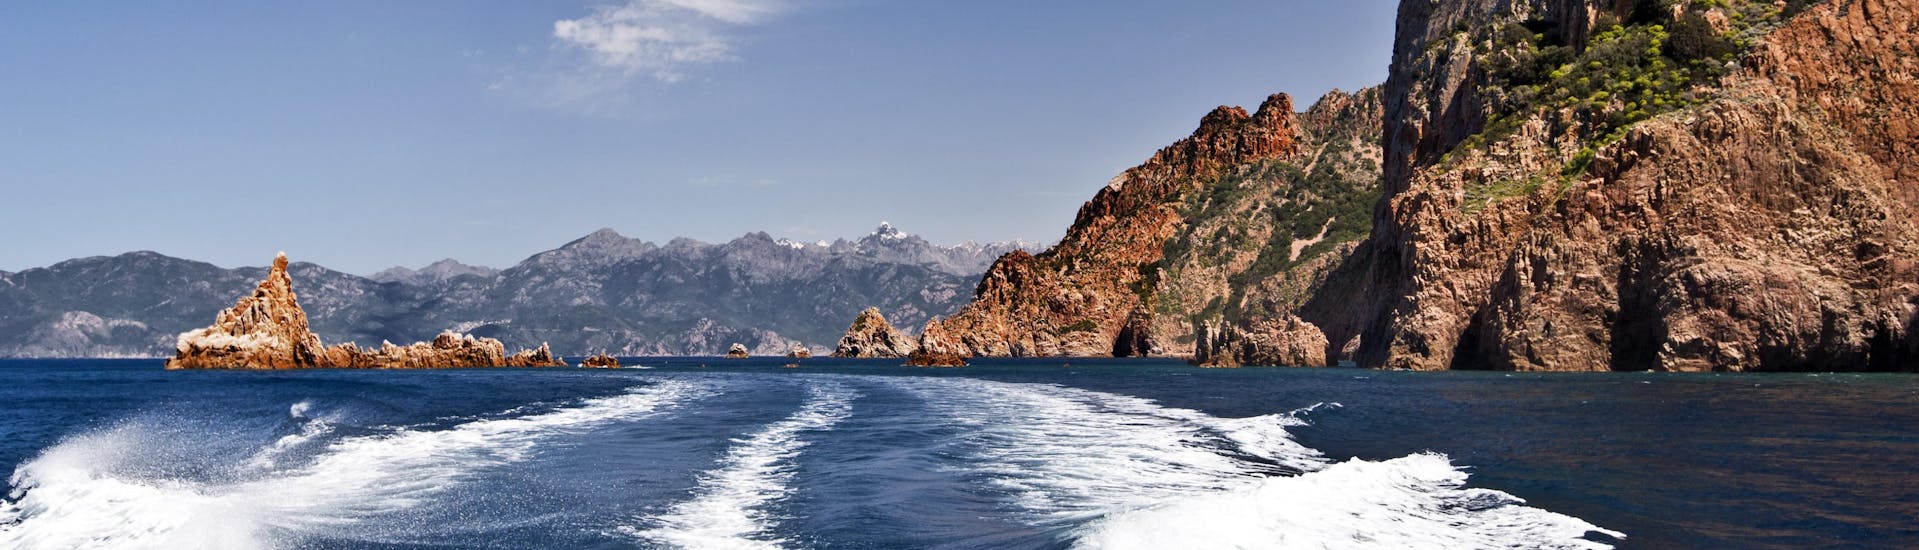 Vue de l'arrière d'un bateau lors d'une balade en bateau de Cargèse aux impressionnantes Calanques de Piana, sur la côte ouest de la Corse.